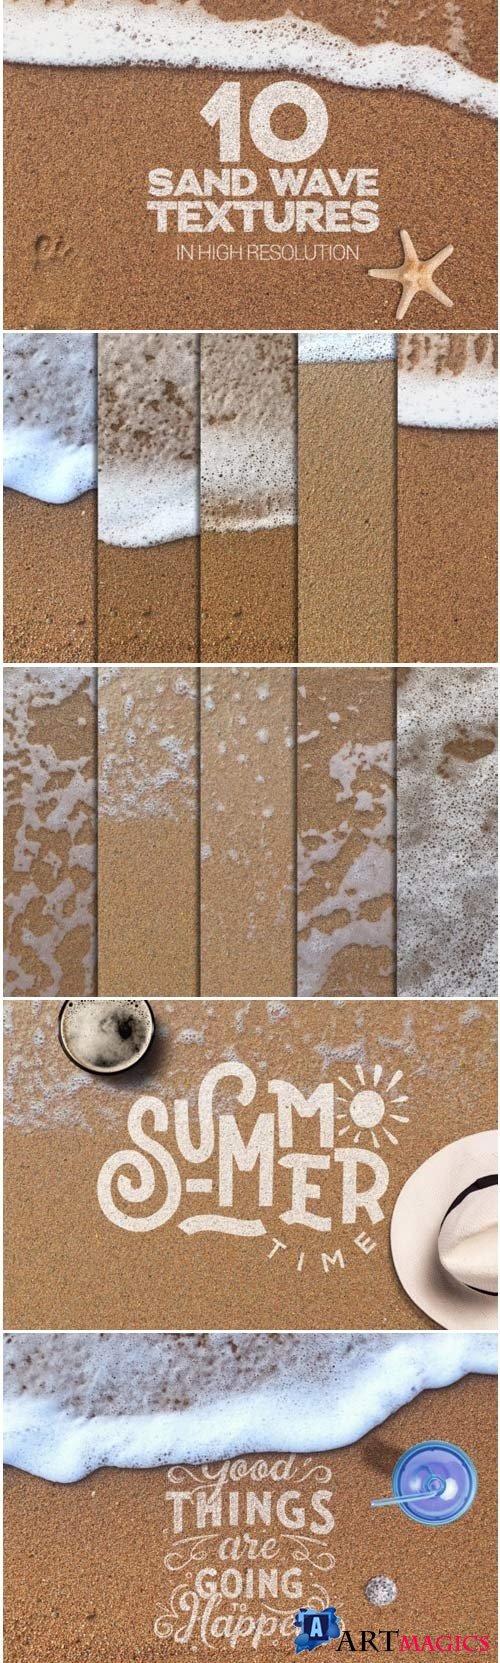 Sand Wave Textures x10 - 3976543